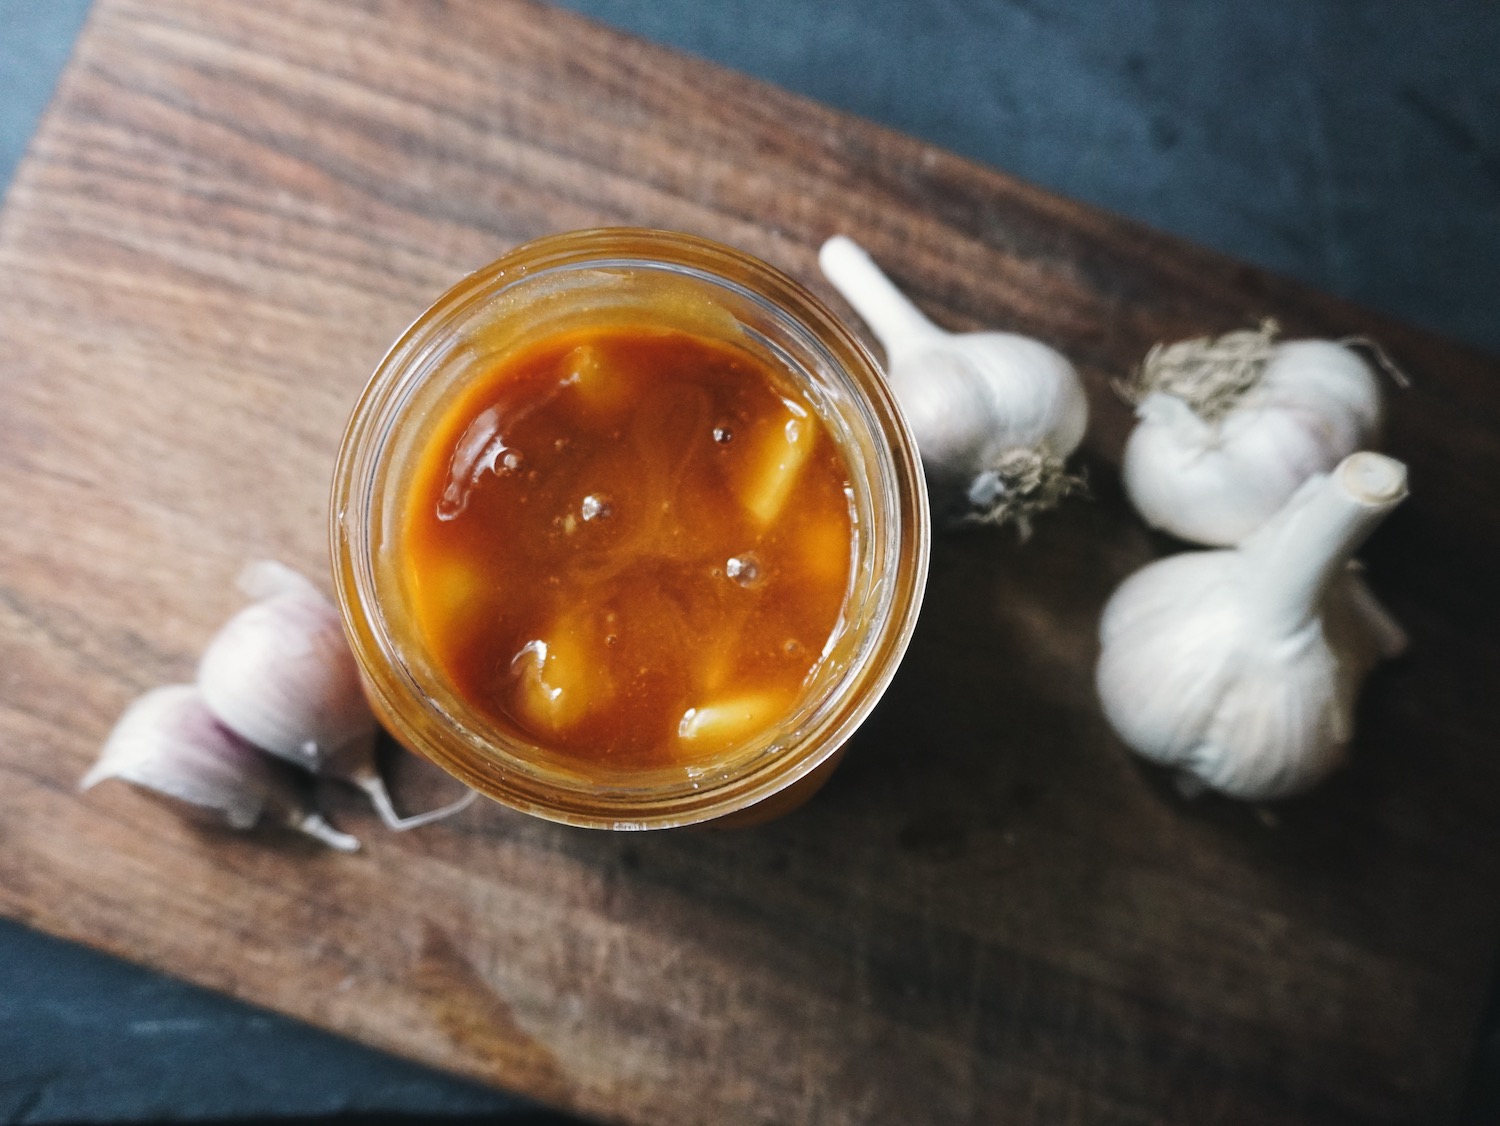 fermented honey garlic in a jar sitting on a wooden cutting board.